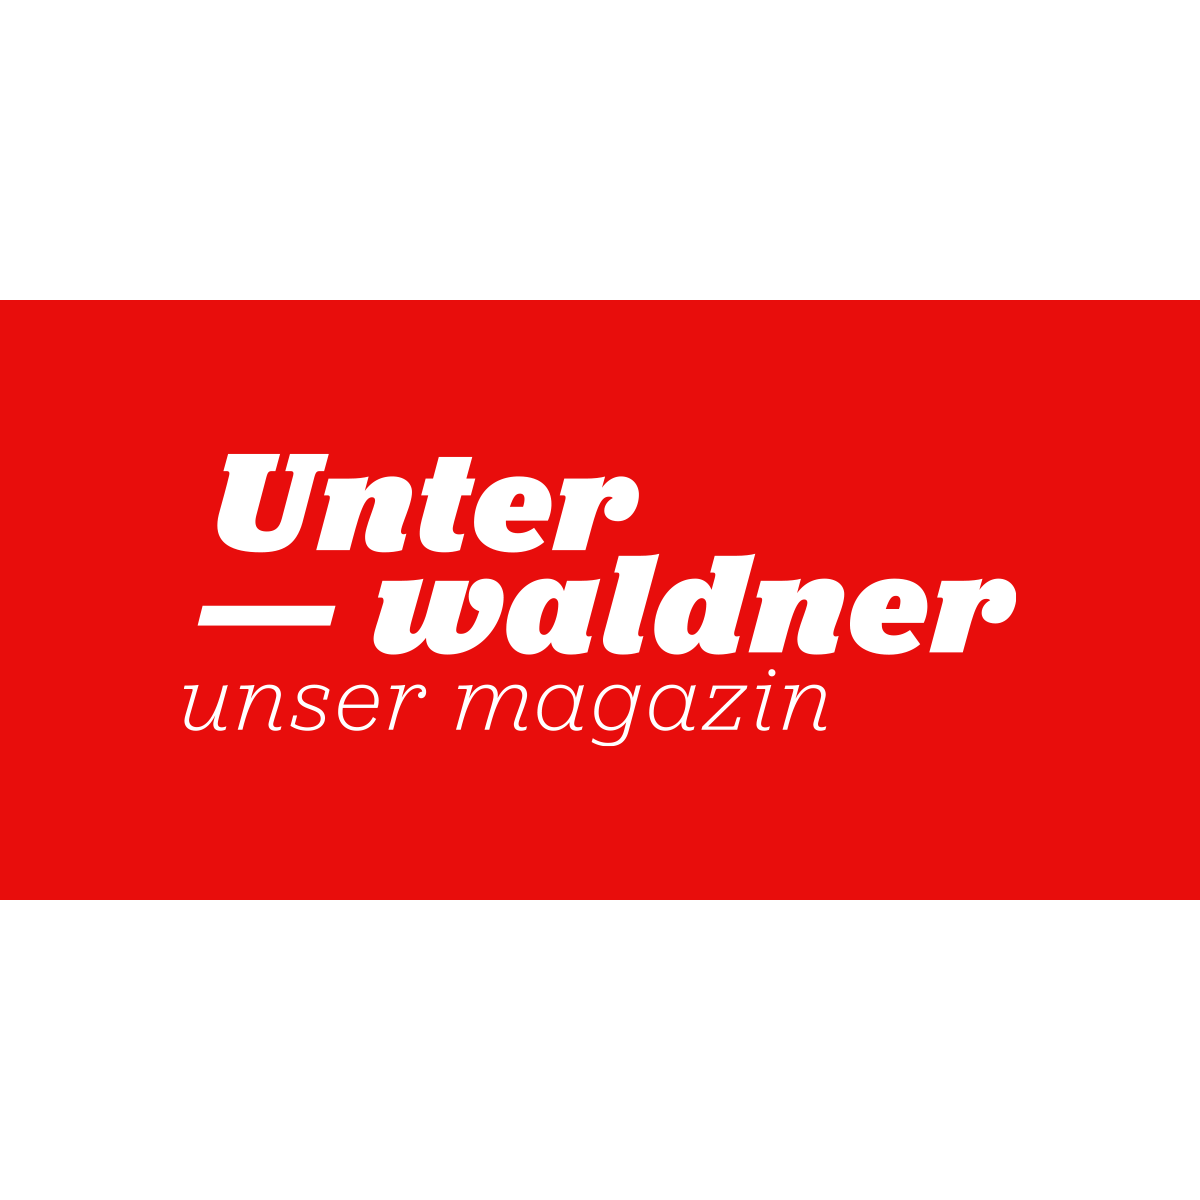 Unterwaldner, unser Magazin Logo